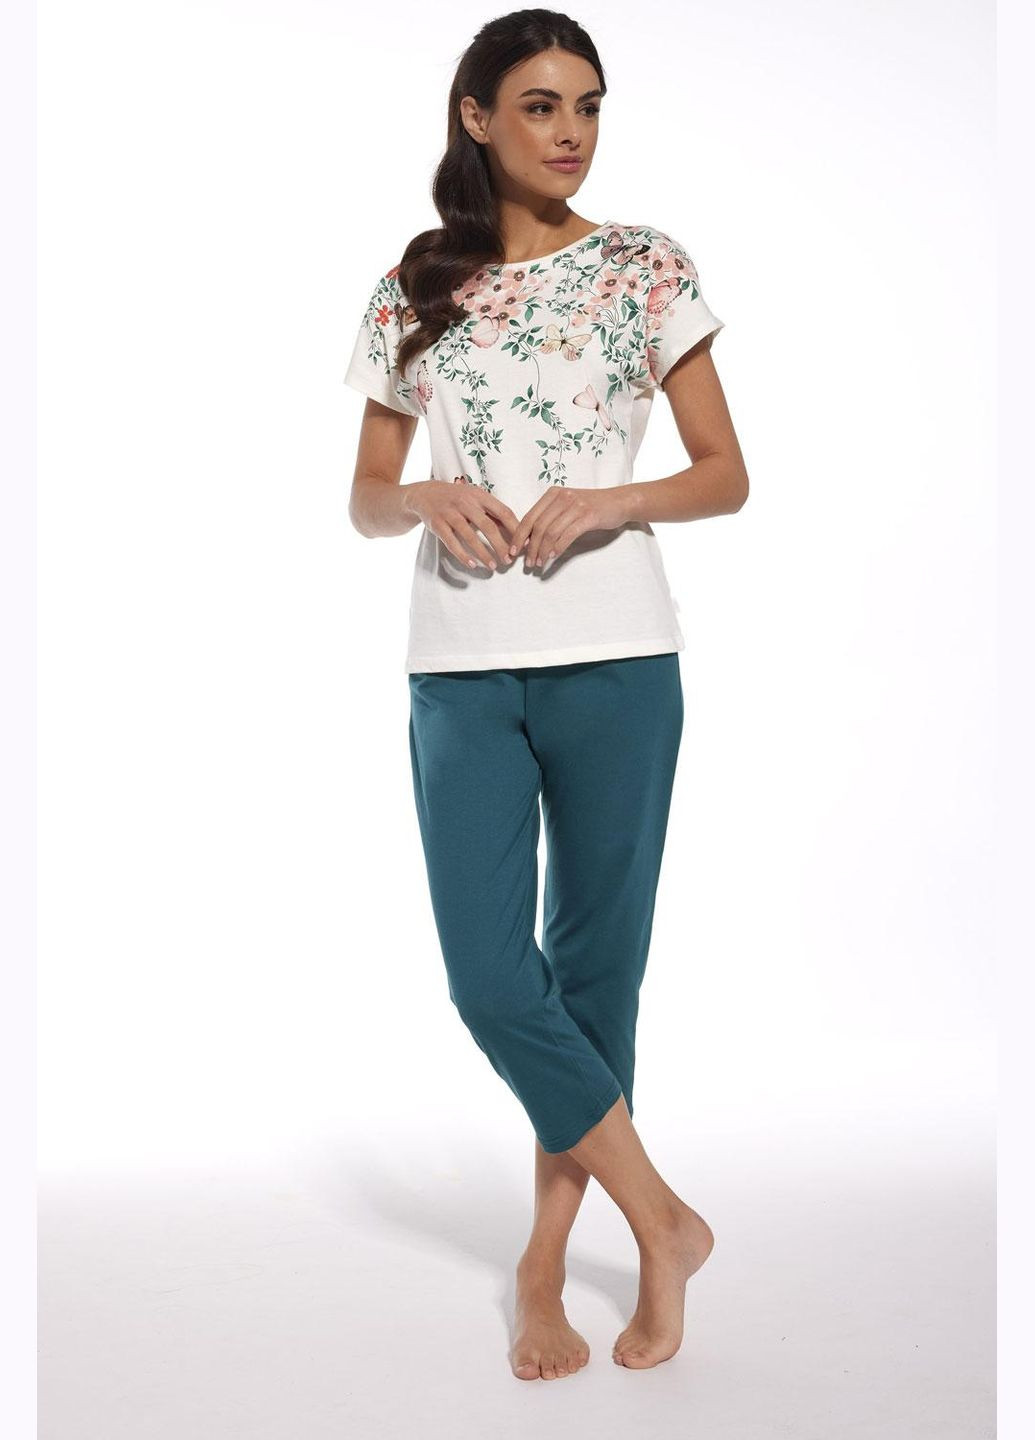 Комбинированная всесезон пижама женская 369-281 a24 футболка + капри Cornette Spring